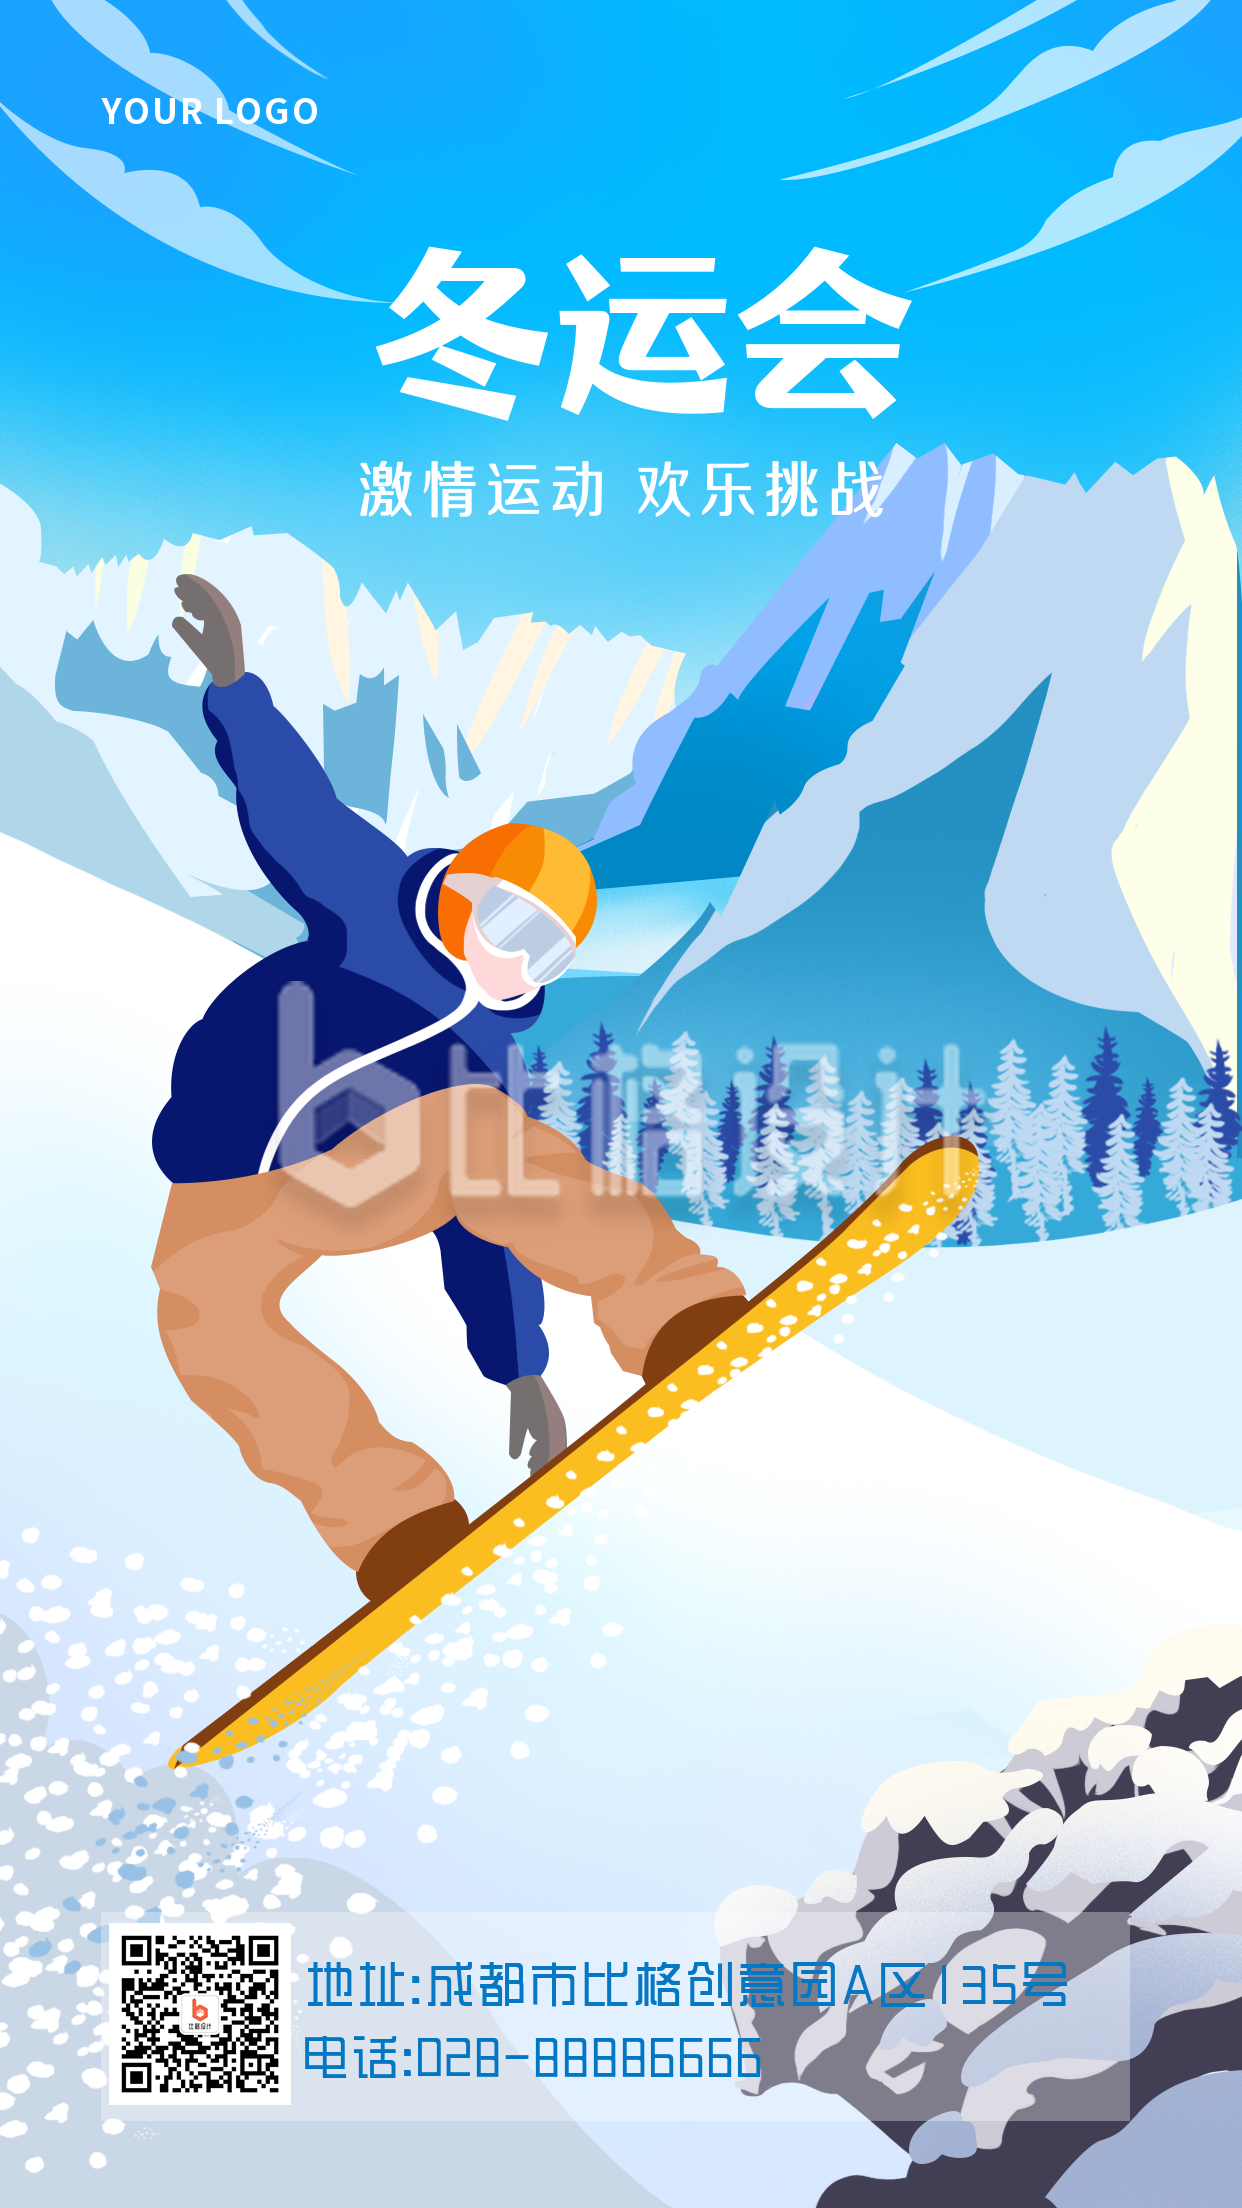 冬季运动会滑板滑雪场景比赛活动手机海报